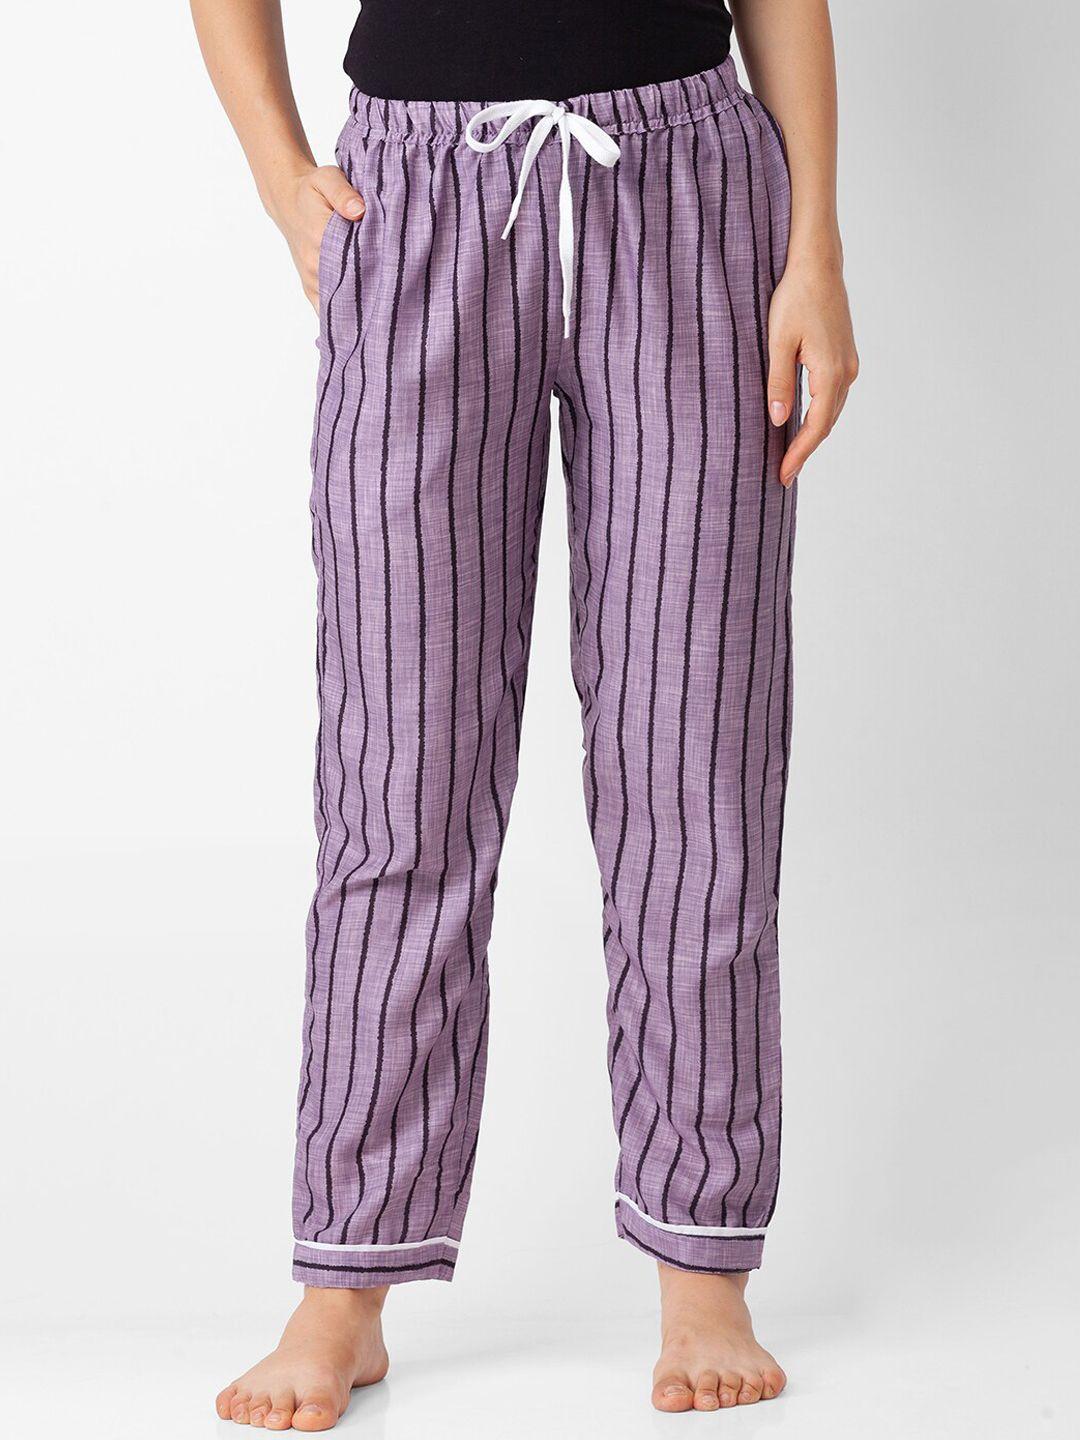 fashionrack-woman-grey-&-black-striped-lounge-pants